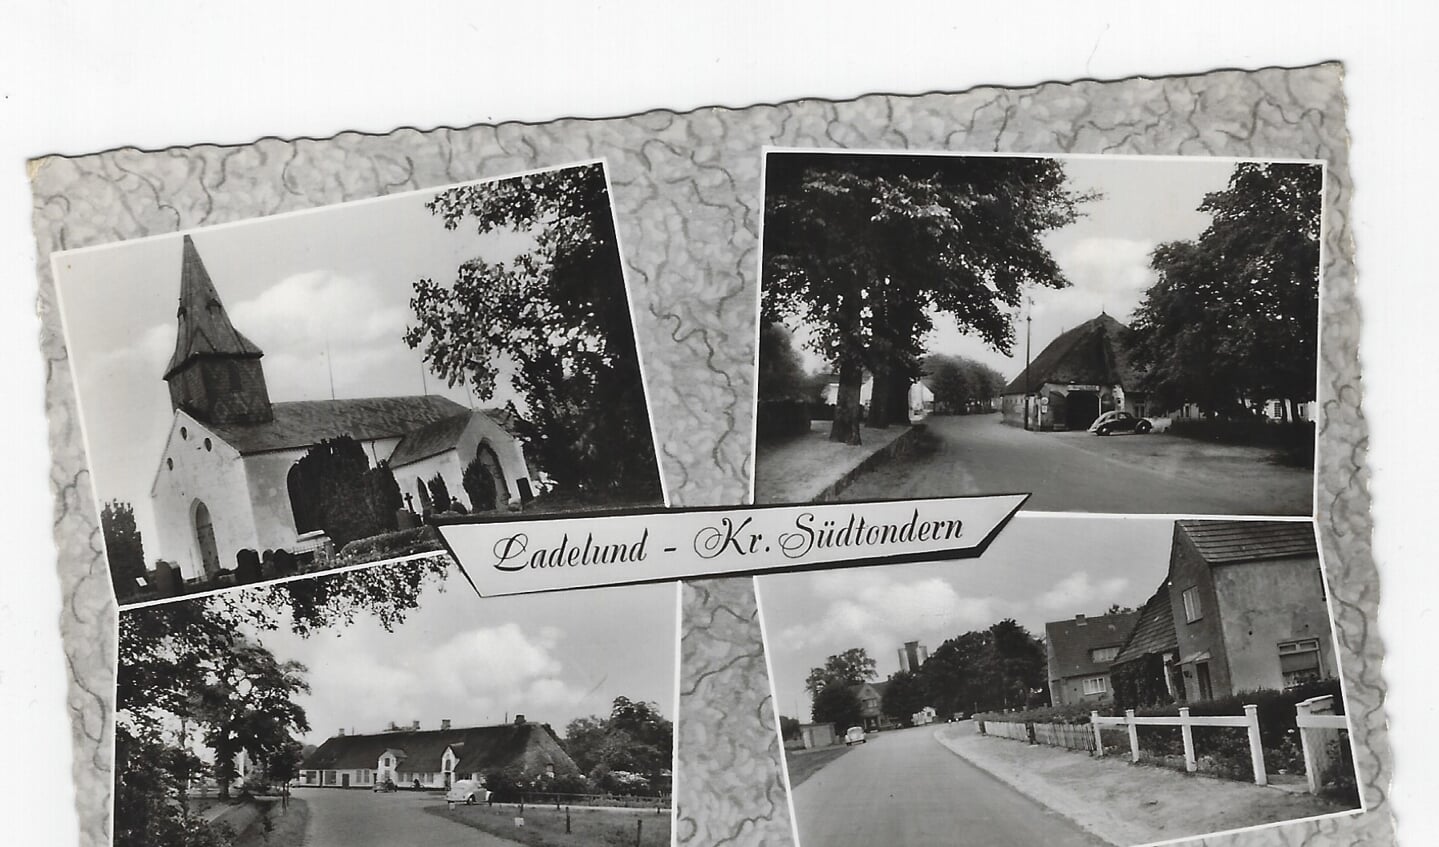 Het dorpje Ladelund (ansicht).